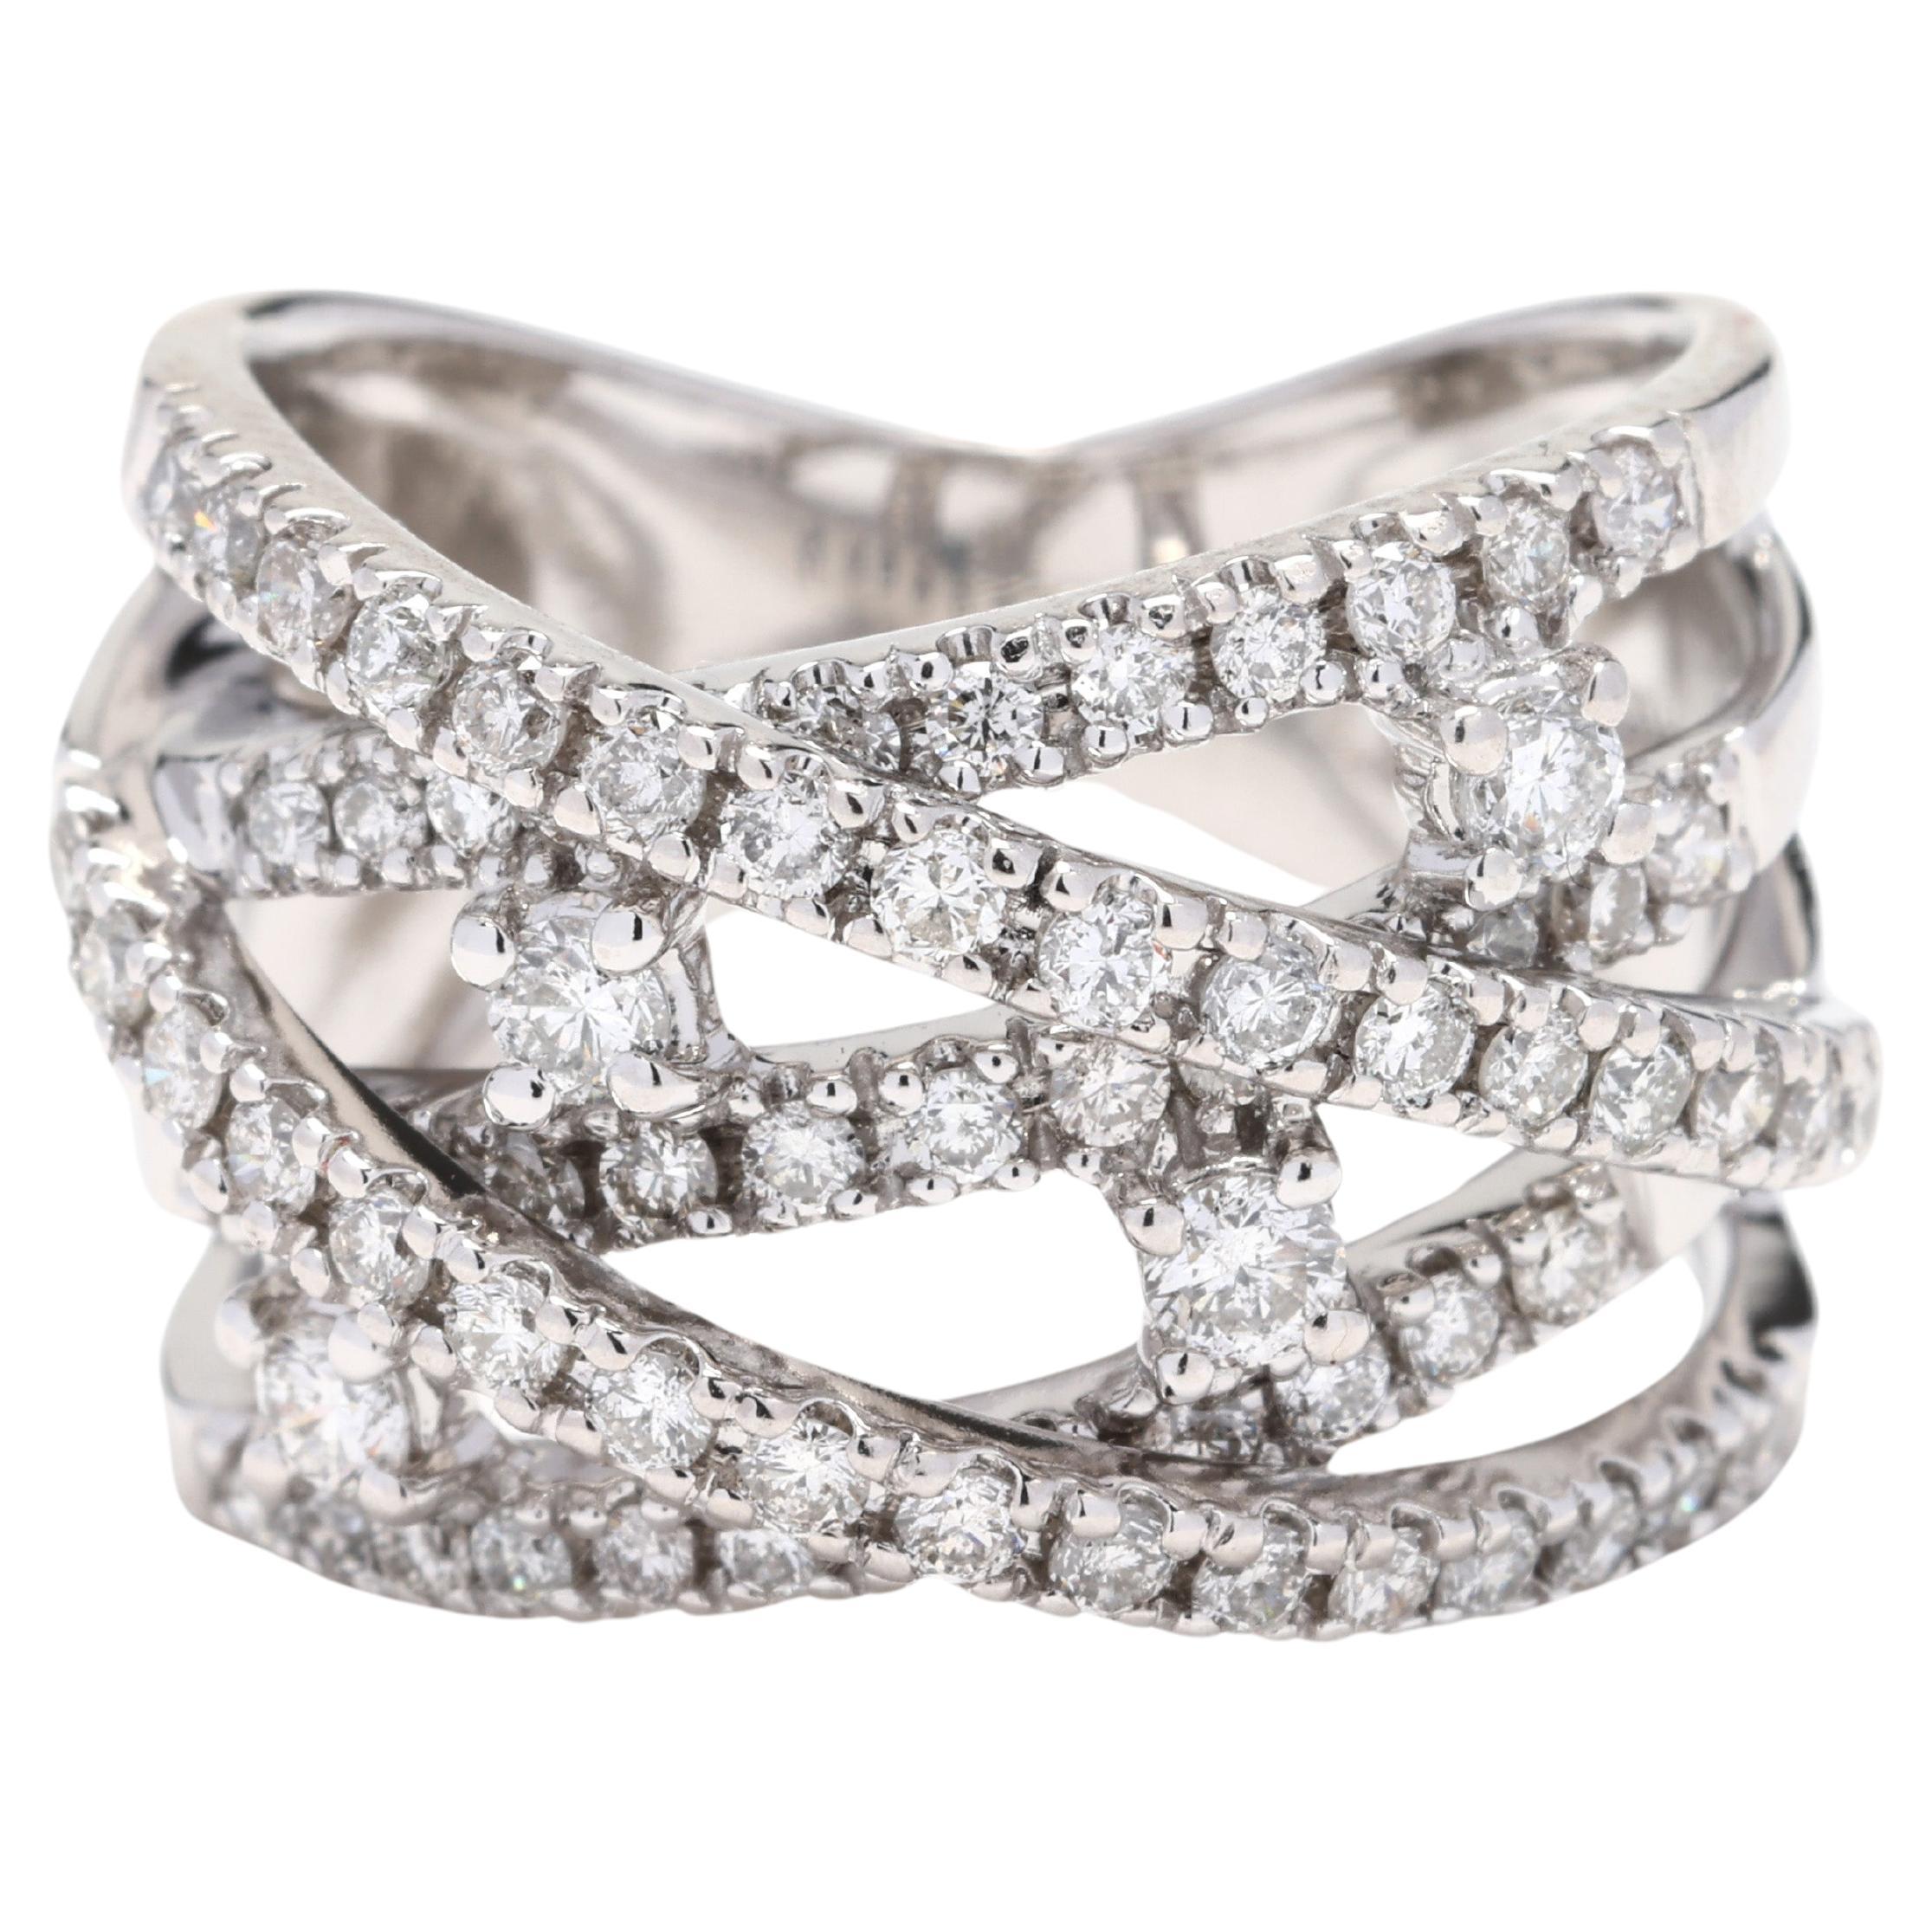 1.1 Karat Diamant gedrehter dicker Ring, 14k Weißgold, Ring Größe 4,75